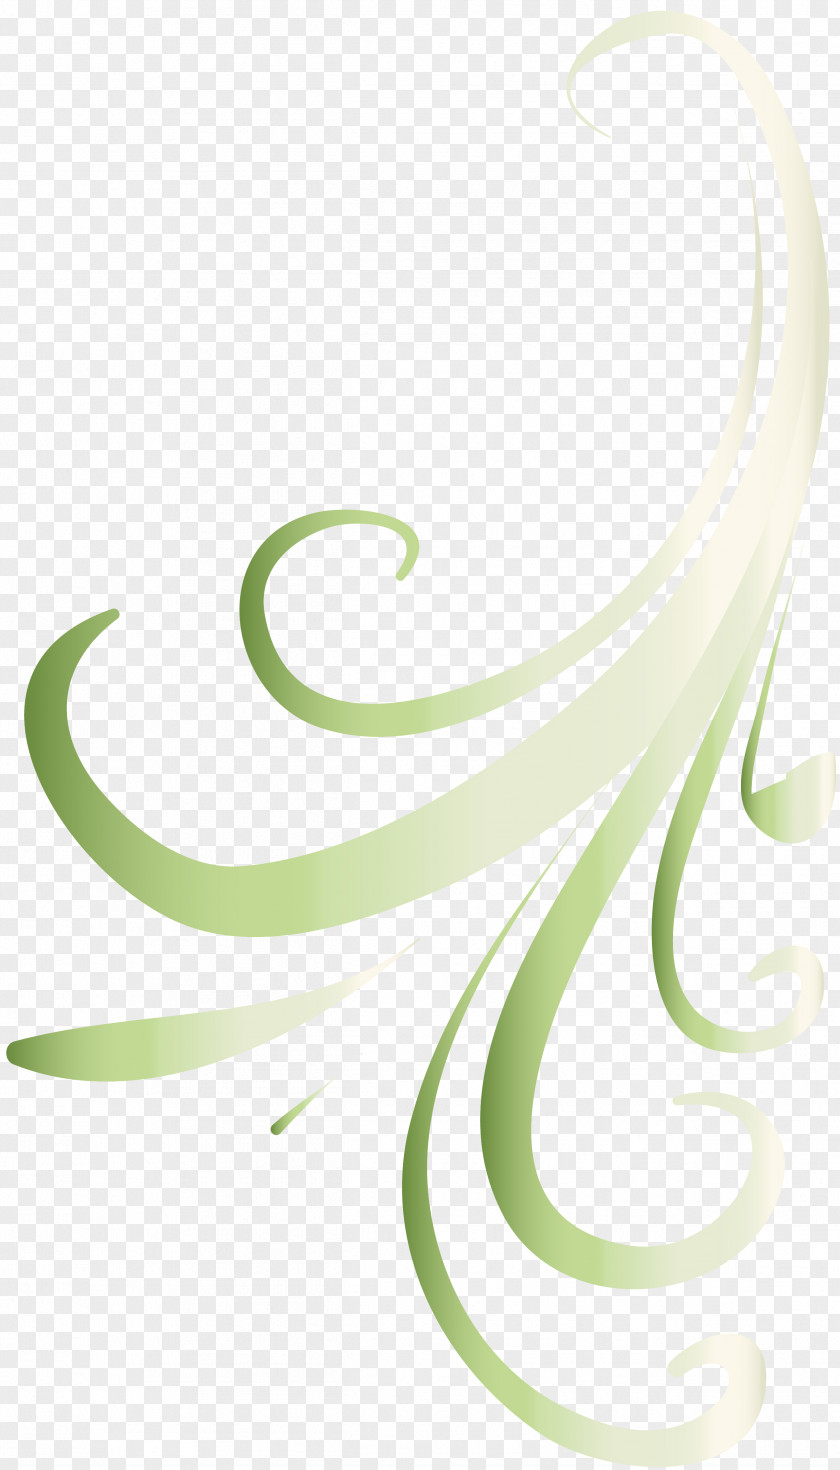 Retro Elements Graphics Product Design Green Font PNG